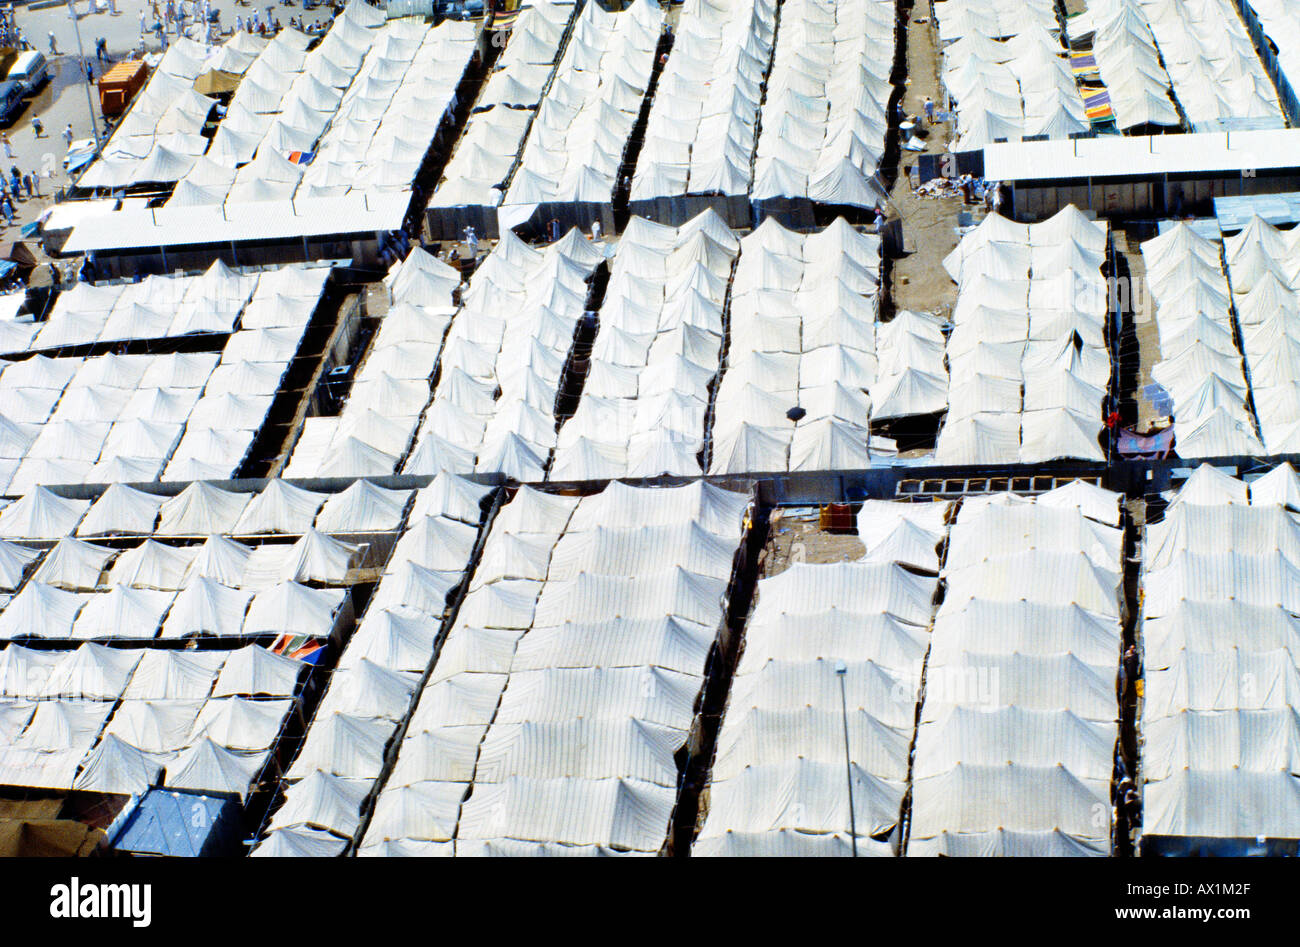 Makkah Saudi Arabia Hajj Pilgrims Mina - Tents Stock Photo